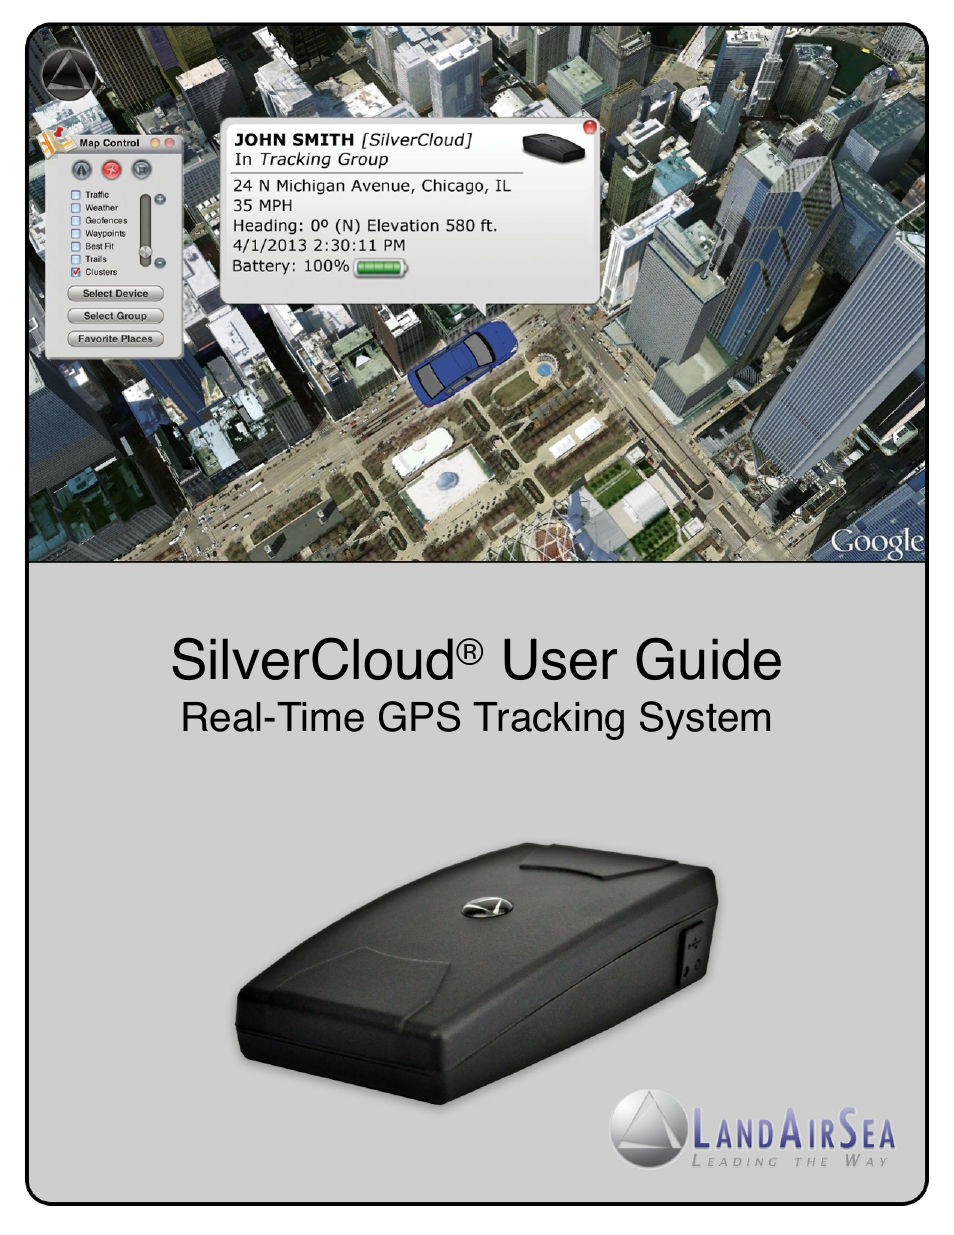 SilverCloud Rear-Time GPS Tracker